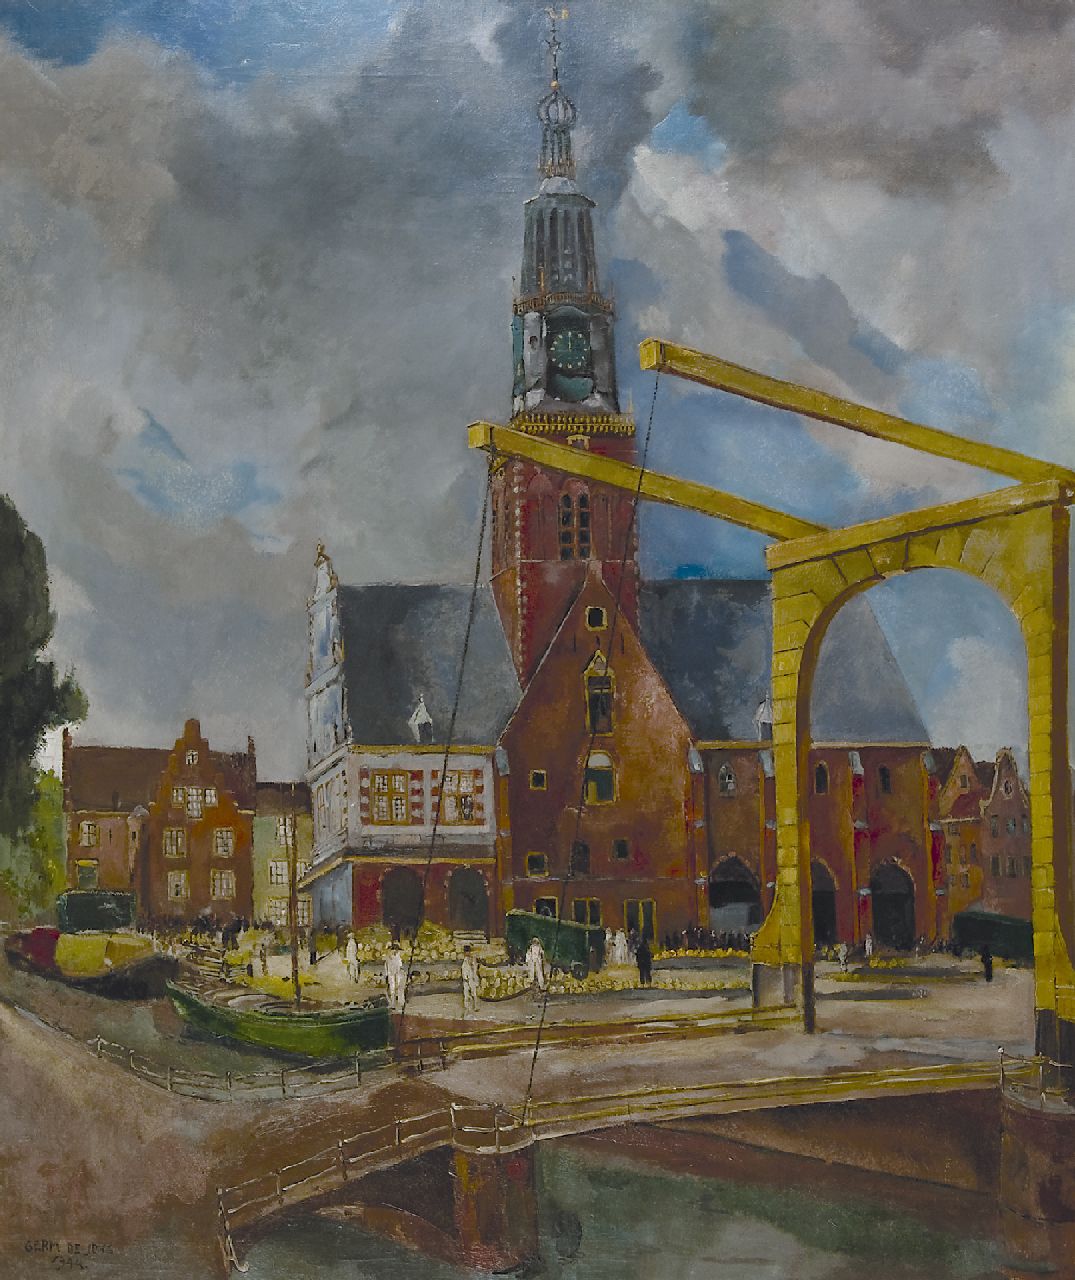 Jong G. de | Gerben 'Germ' de Jong | Schilderijen te koop aangeboden | De Kaasmarkt, Alkmaar, olieverf op doek 117,0 x 99,3 cm, gesigneerd linksonder en gedateerd 1944